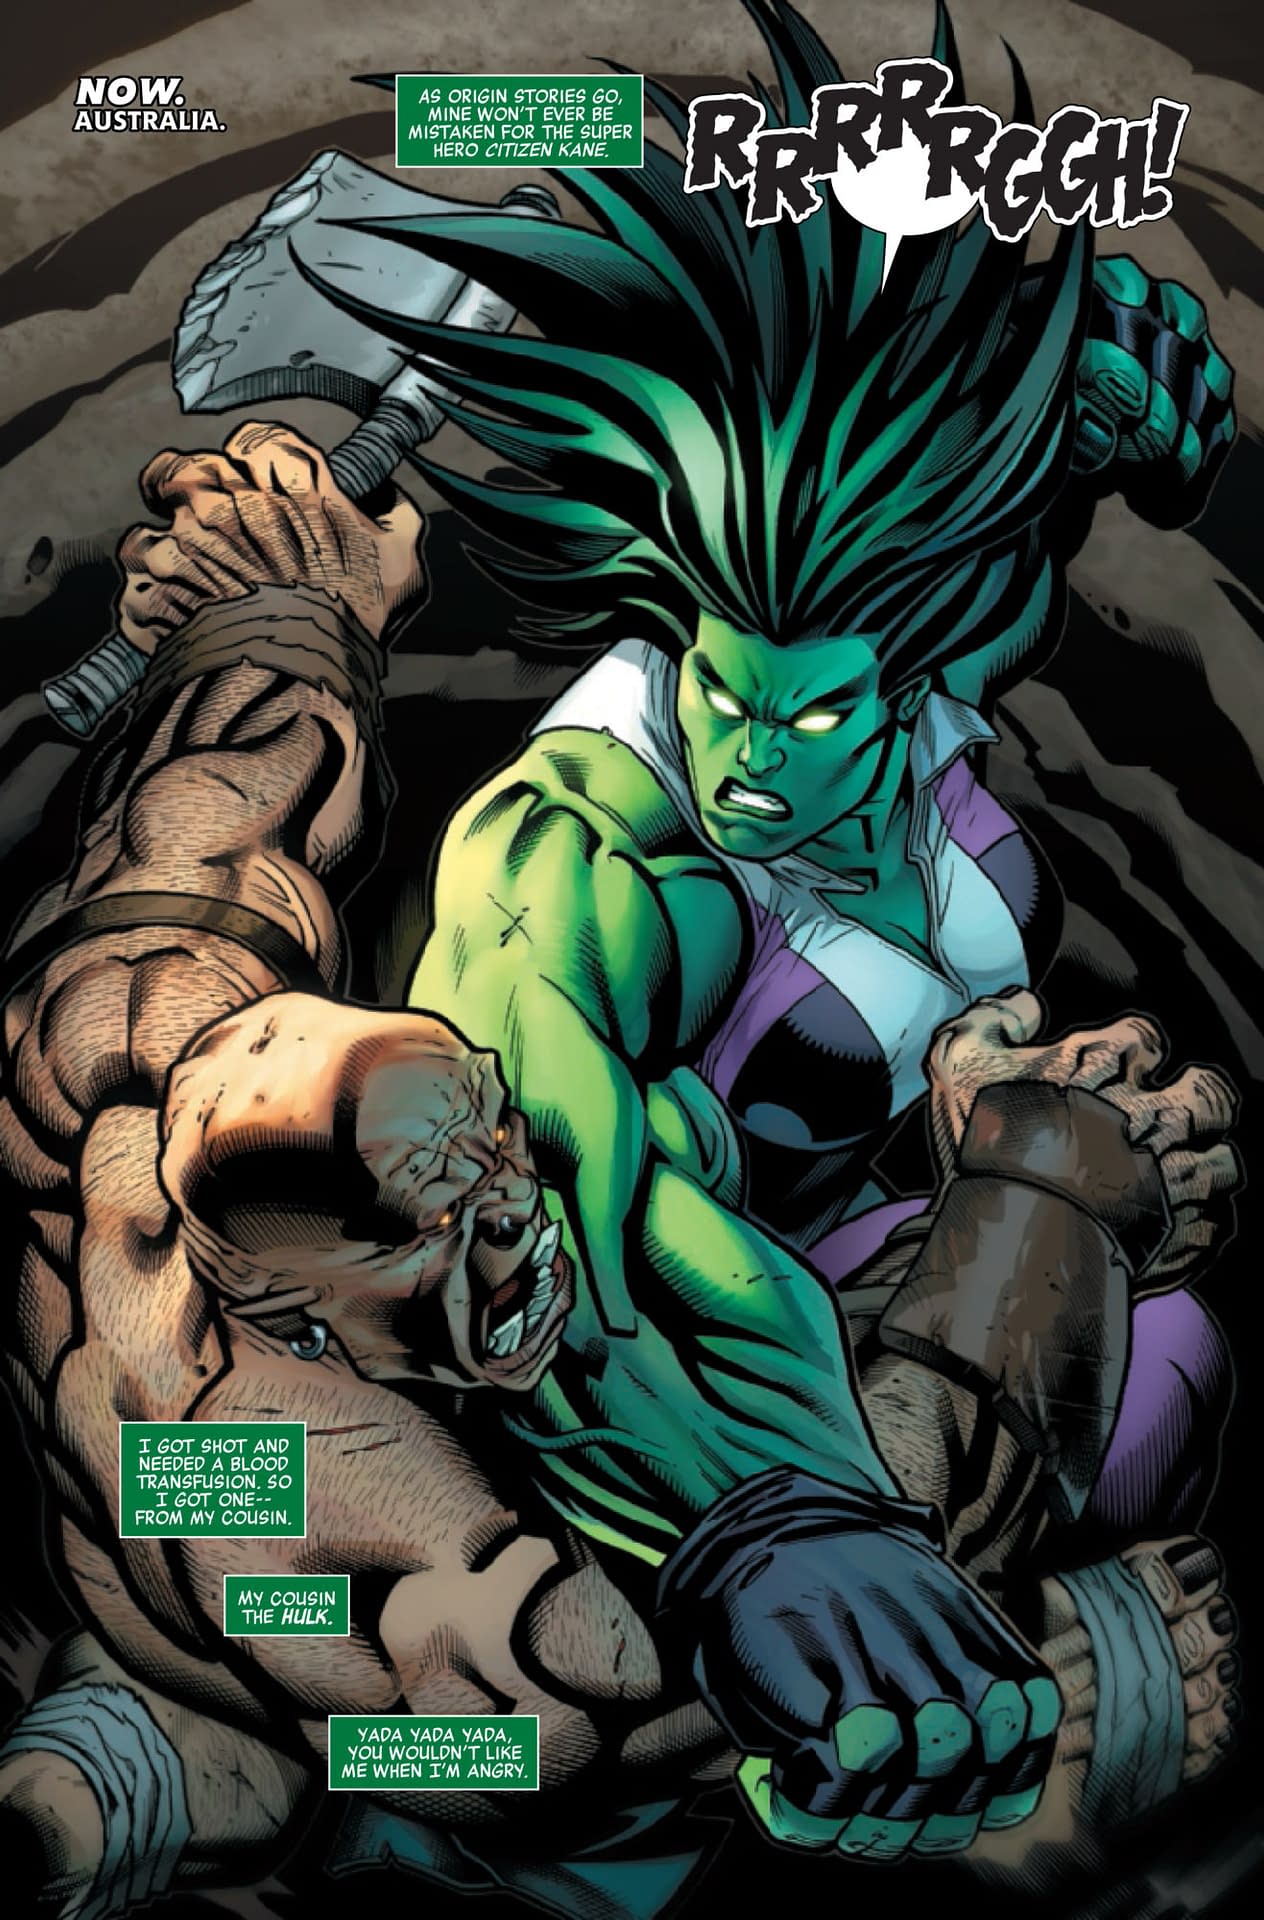 Making She-Hulk Sensational Again in Avengers #20 (Preview)